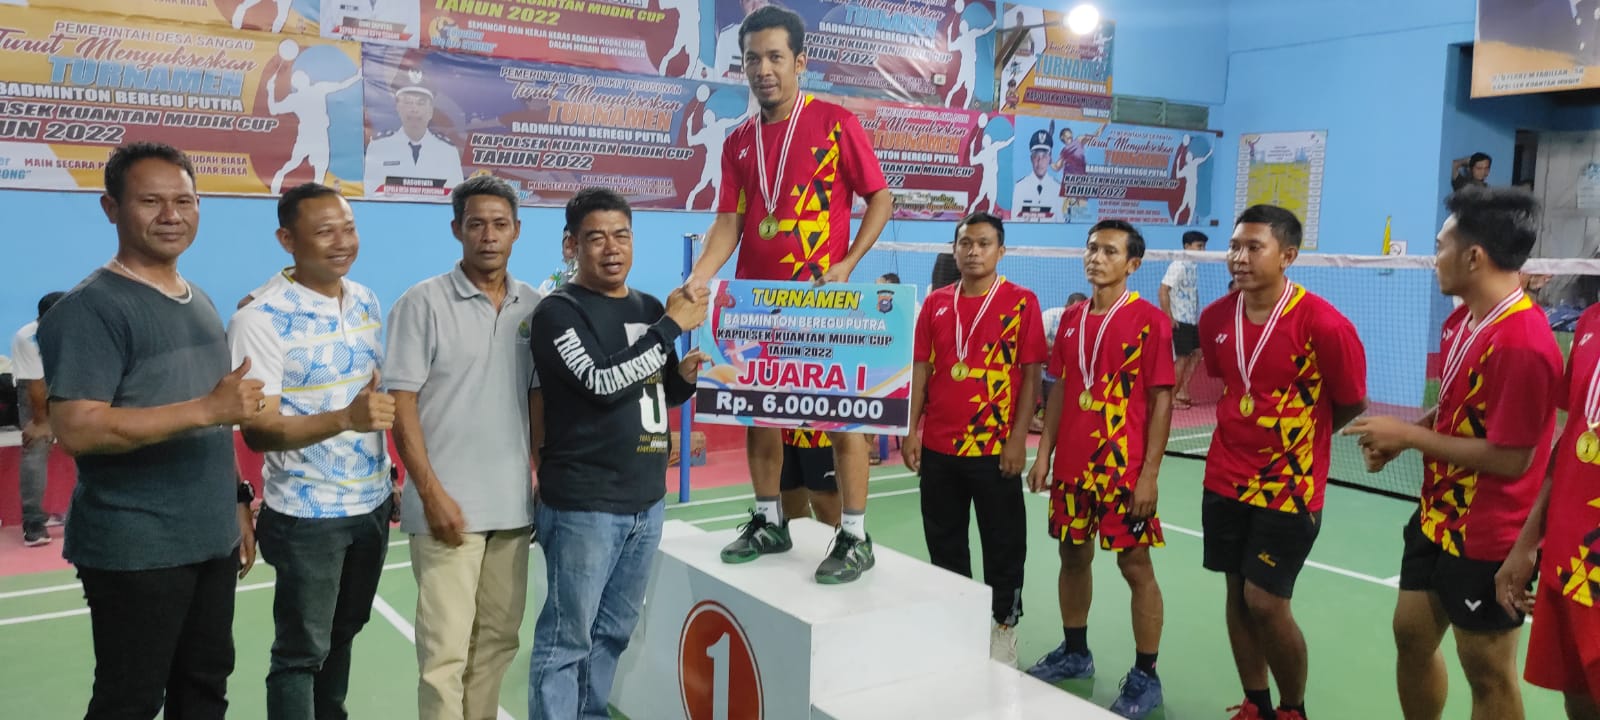 Turnamen Badminton Sukses, Ketua Koni Puji Polsek Kuantan Mudik